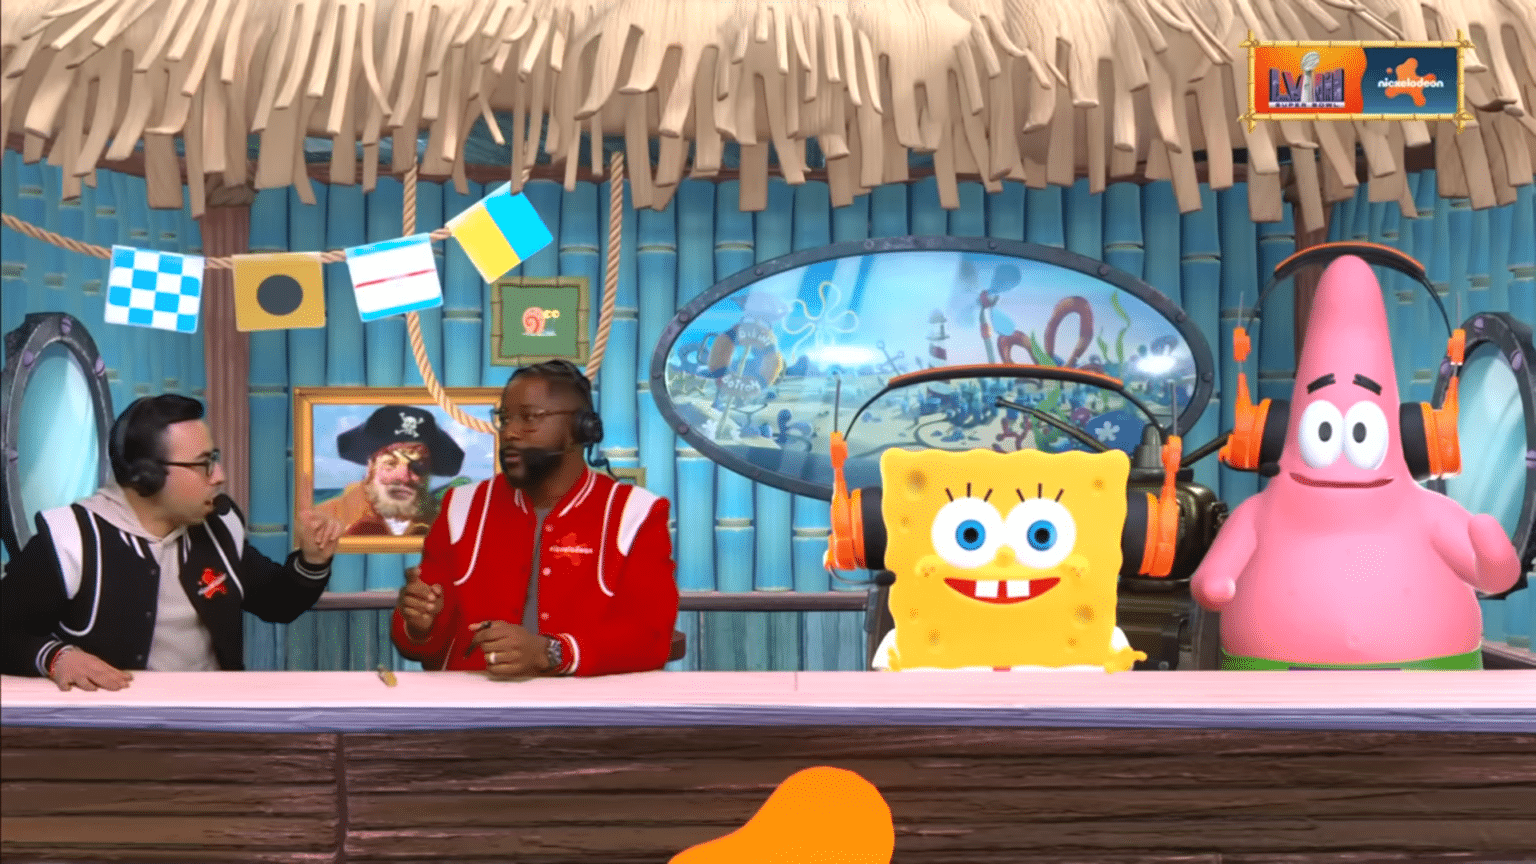 Spongebob at Super Bowl